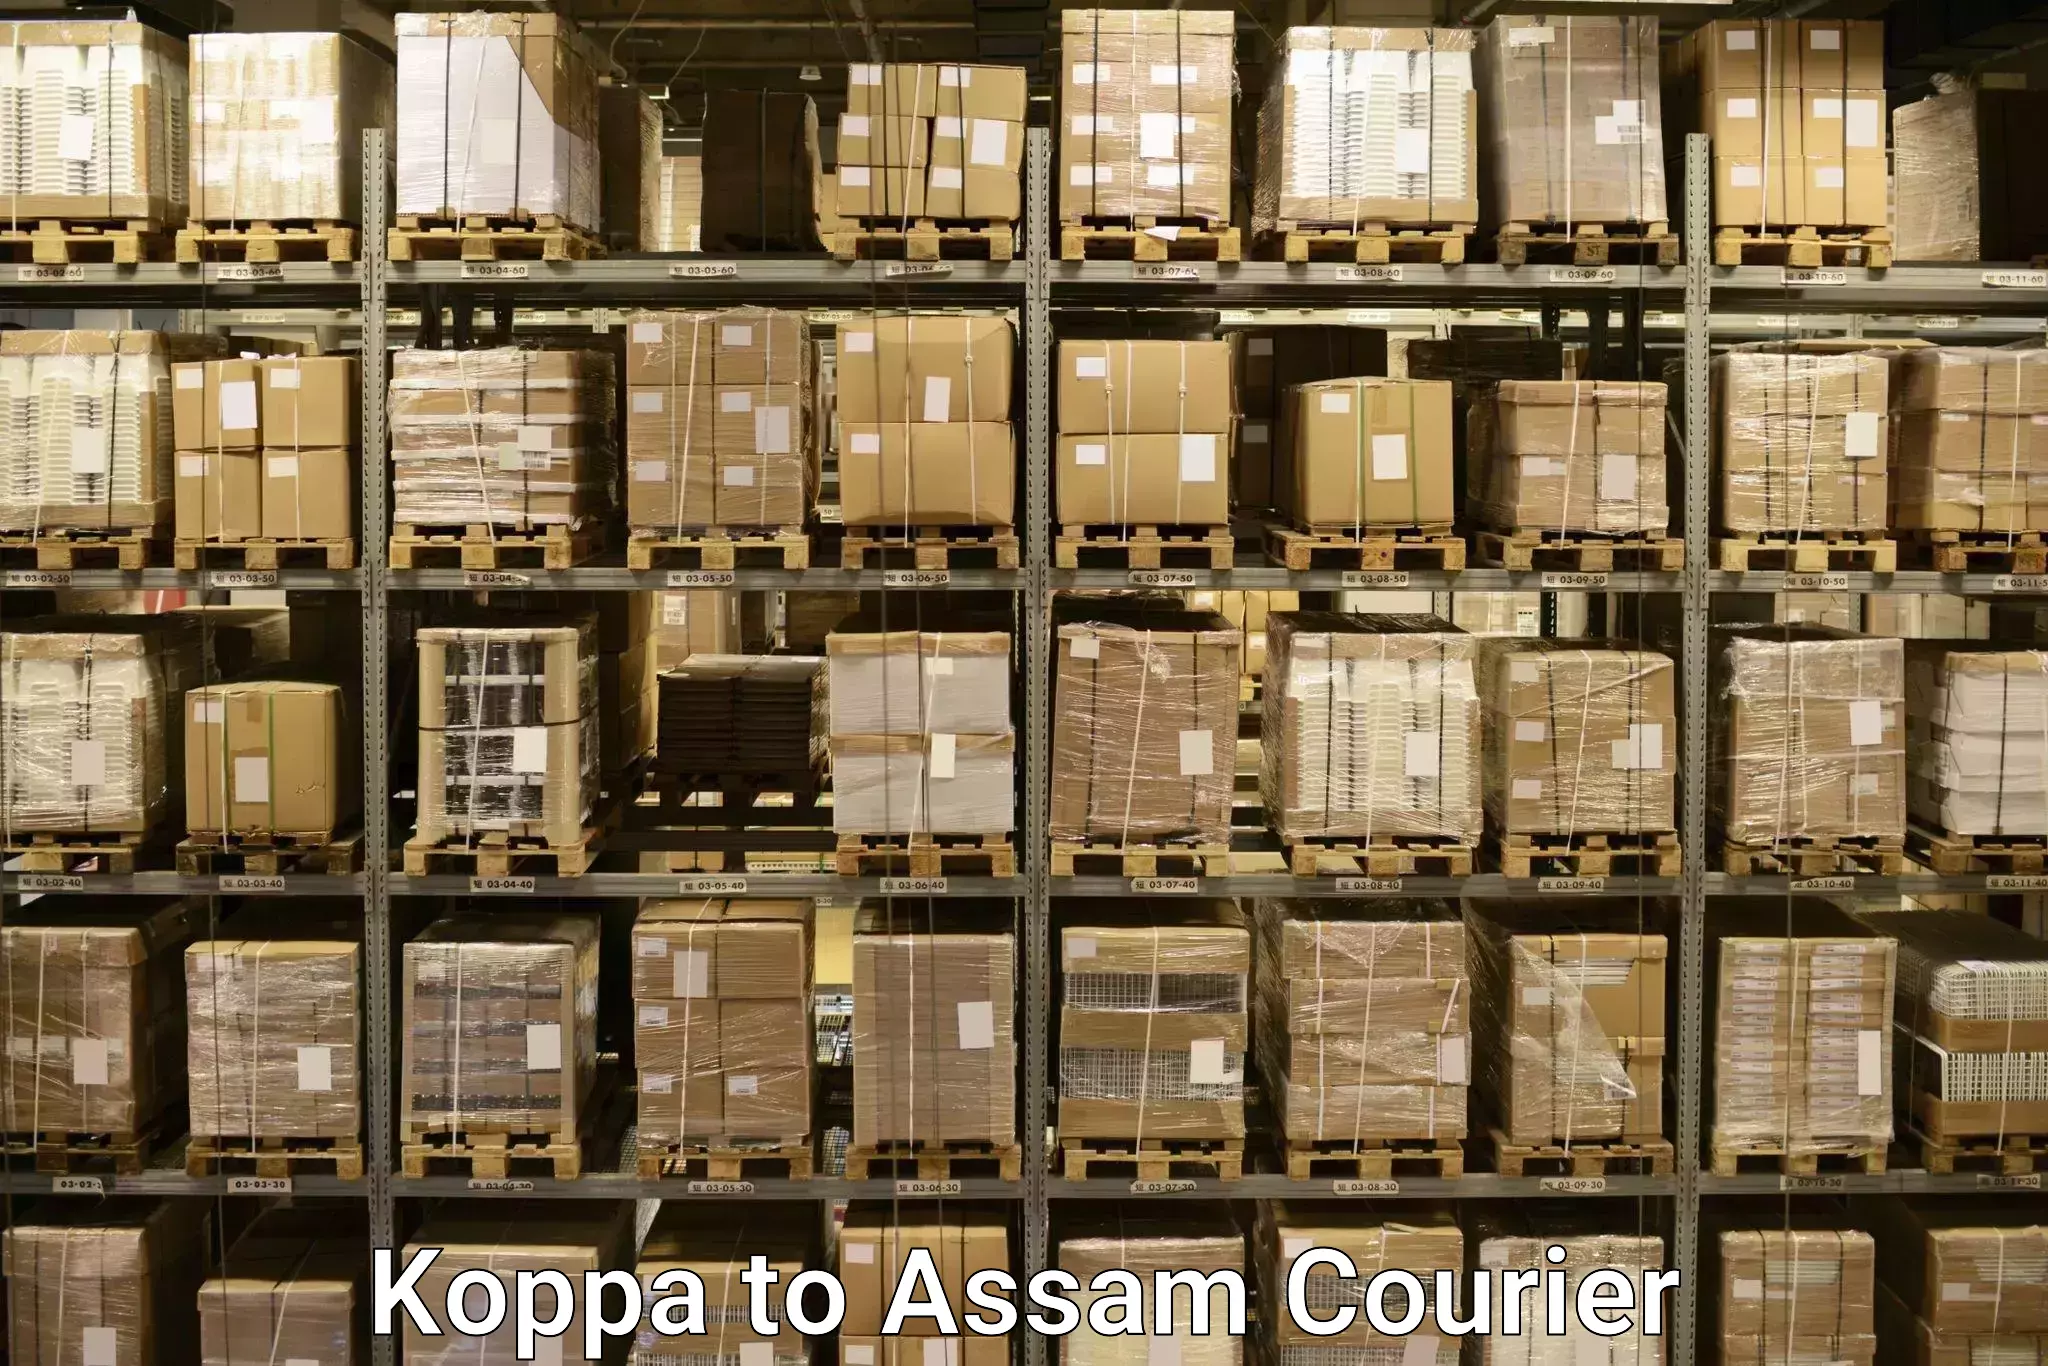 Door-to-door baggage service Koppa to Assam